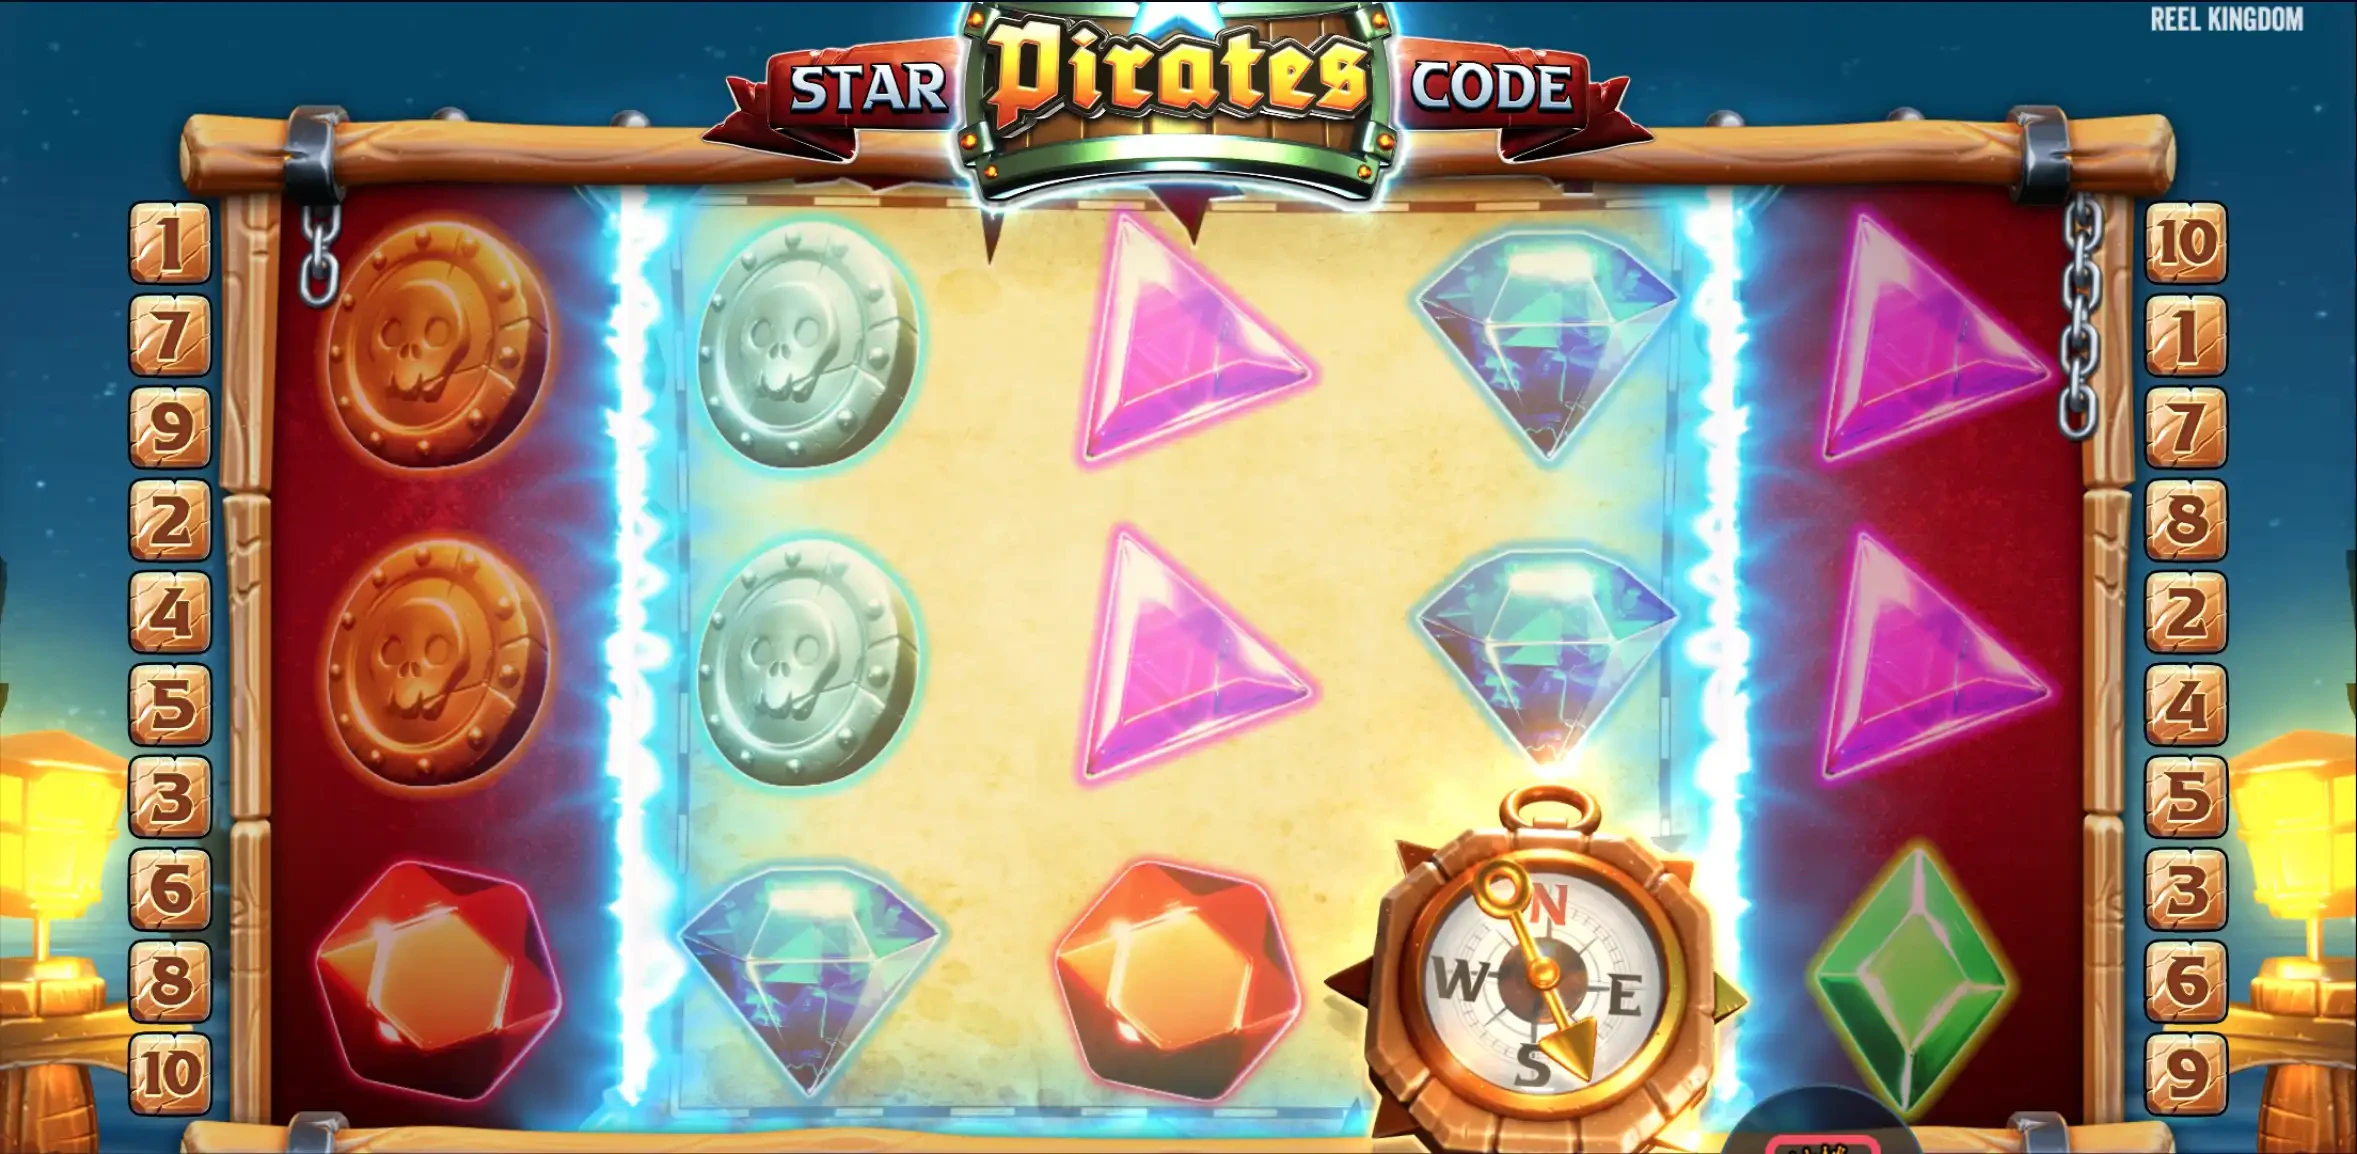 Fonctionnalité durant bonus Star Pirates Code